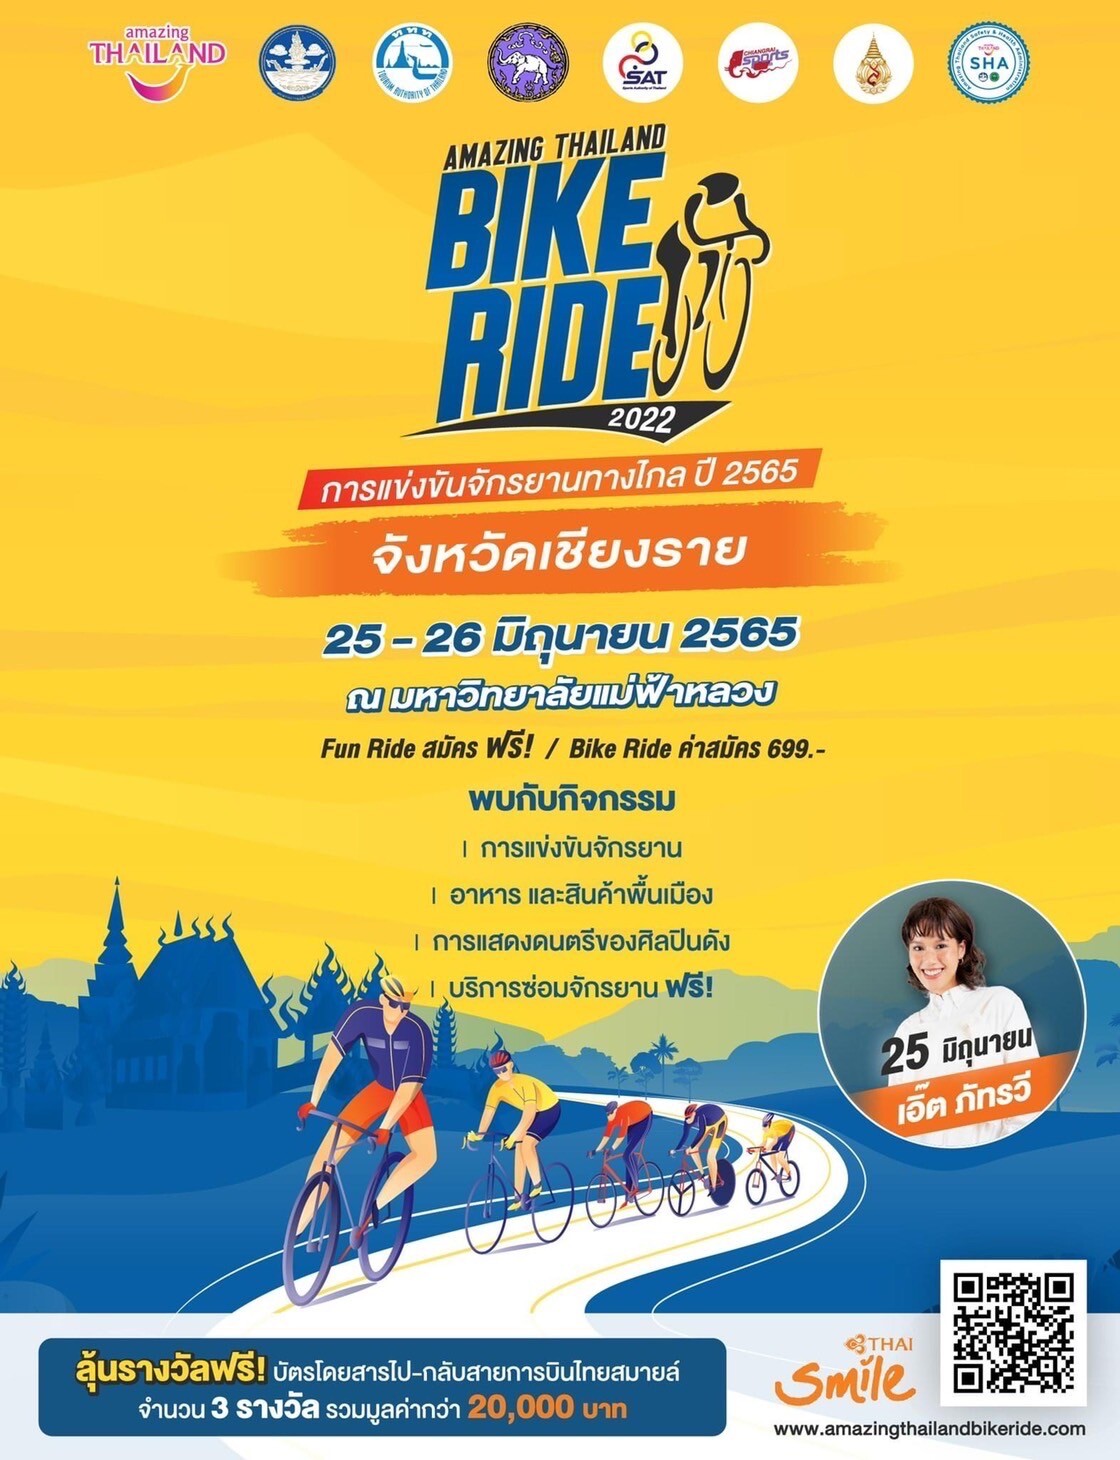 ททท. ชวนนักท่องเที่ยวสมัครเข้าร่วมปั่น พิชิตเส้นทางสวนพฤกษศาสตร์ จ.เชียงราย 25-26 มิ.ย 65 ในกิจกรรมการแข่งขันจักรยานทางไกล ปี 2565 (Amazing Thailand Bike Ride 2022)